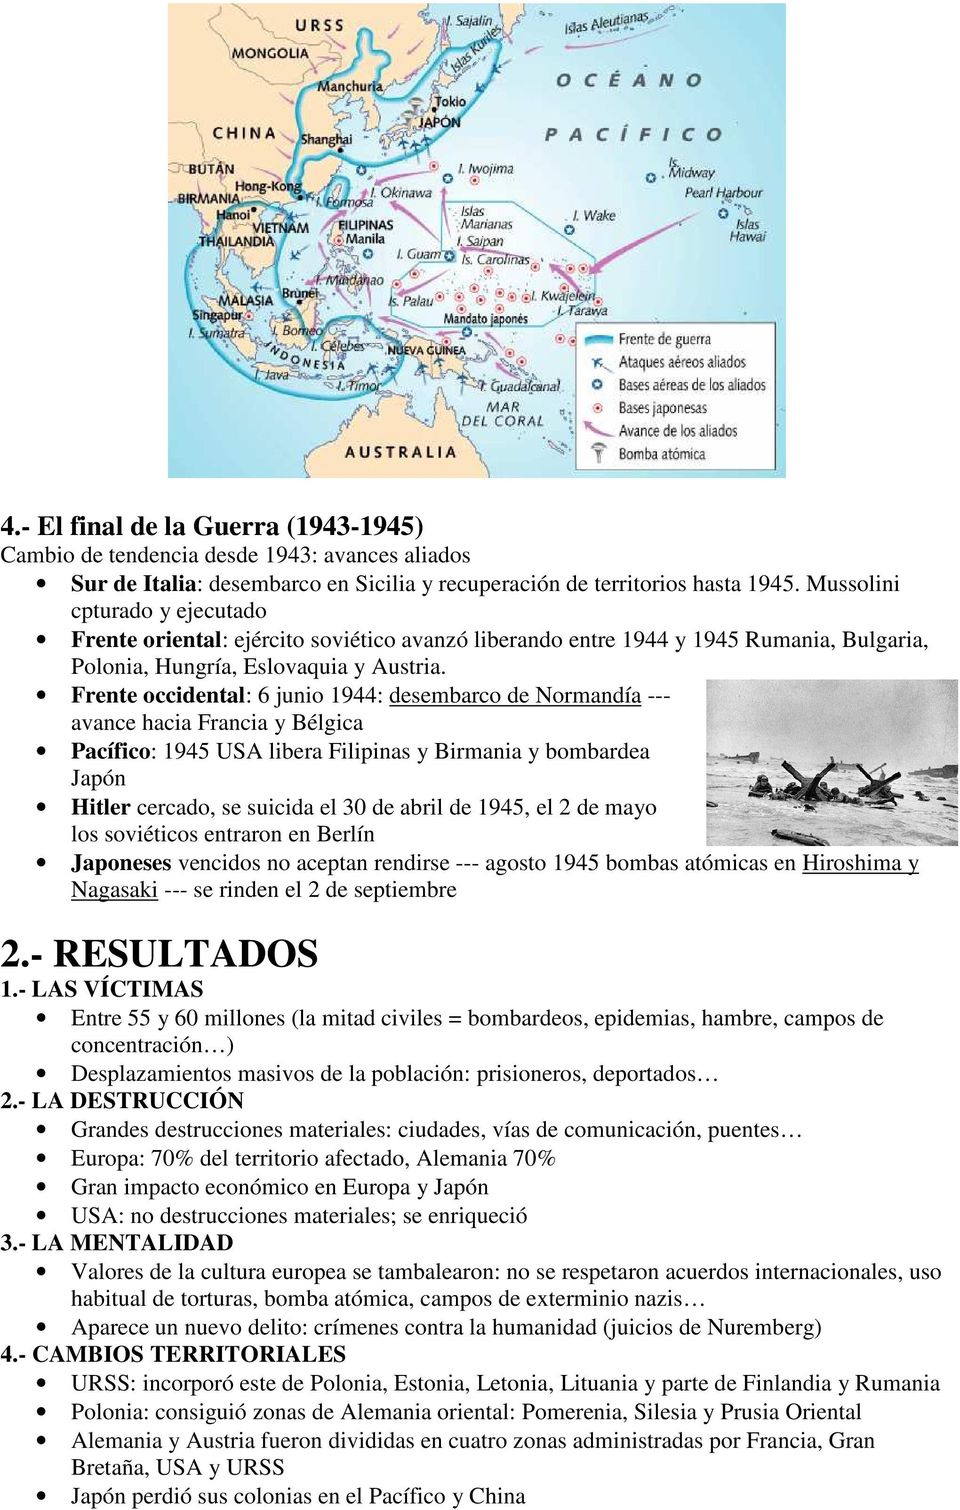 Frente occidental: 6 junio 1944: desembarco de Normandía --- avance hacia Francia y Bélgica Pacífico: 1945 USA libera Filipinas y Birmania y bombardea Japón Hitler cercado, se suicida el 30 de abril